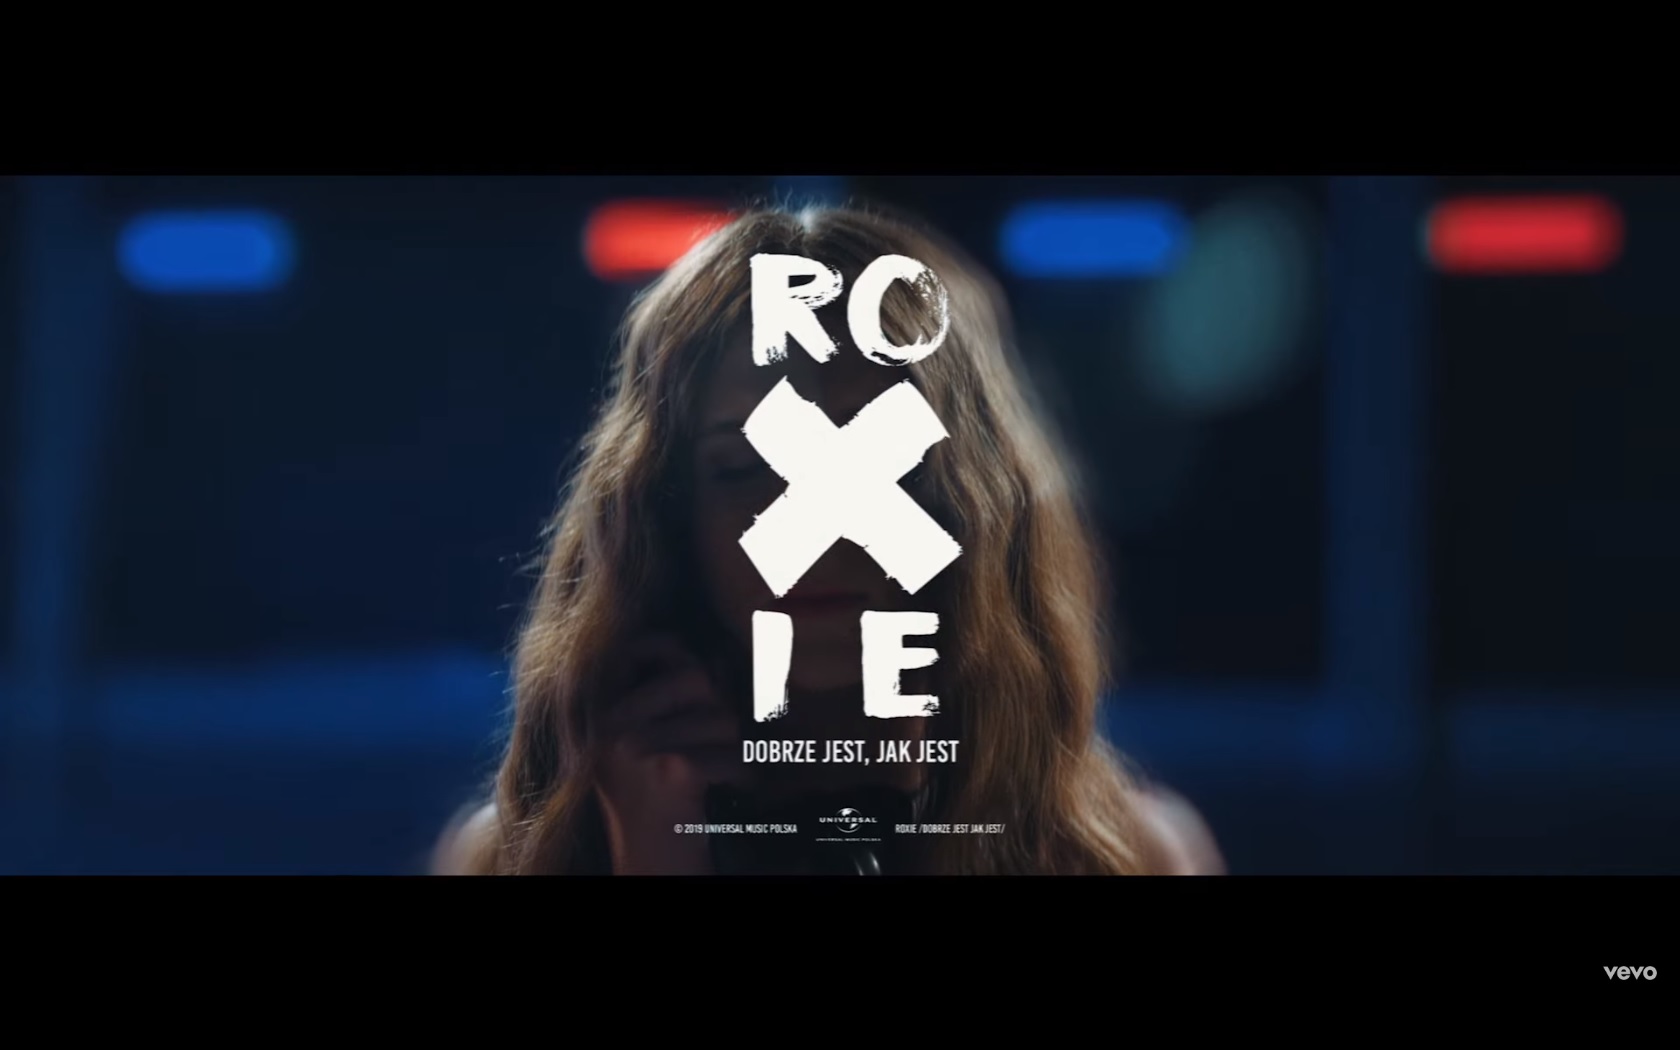  VÍDEO: O novo single e videoclip de Roksana Węgiel, ‘Dobrze Jest, Jak Jest’